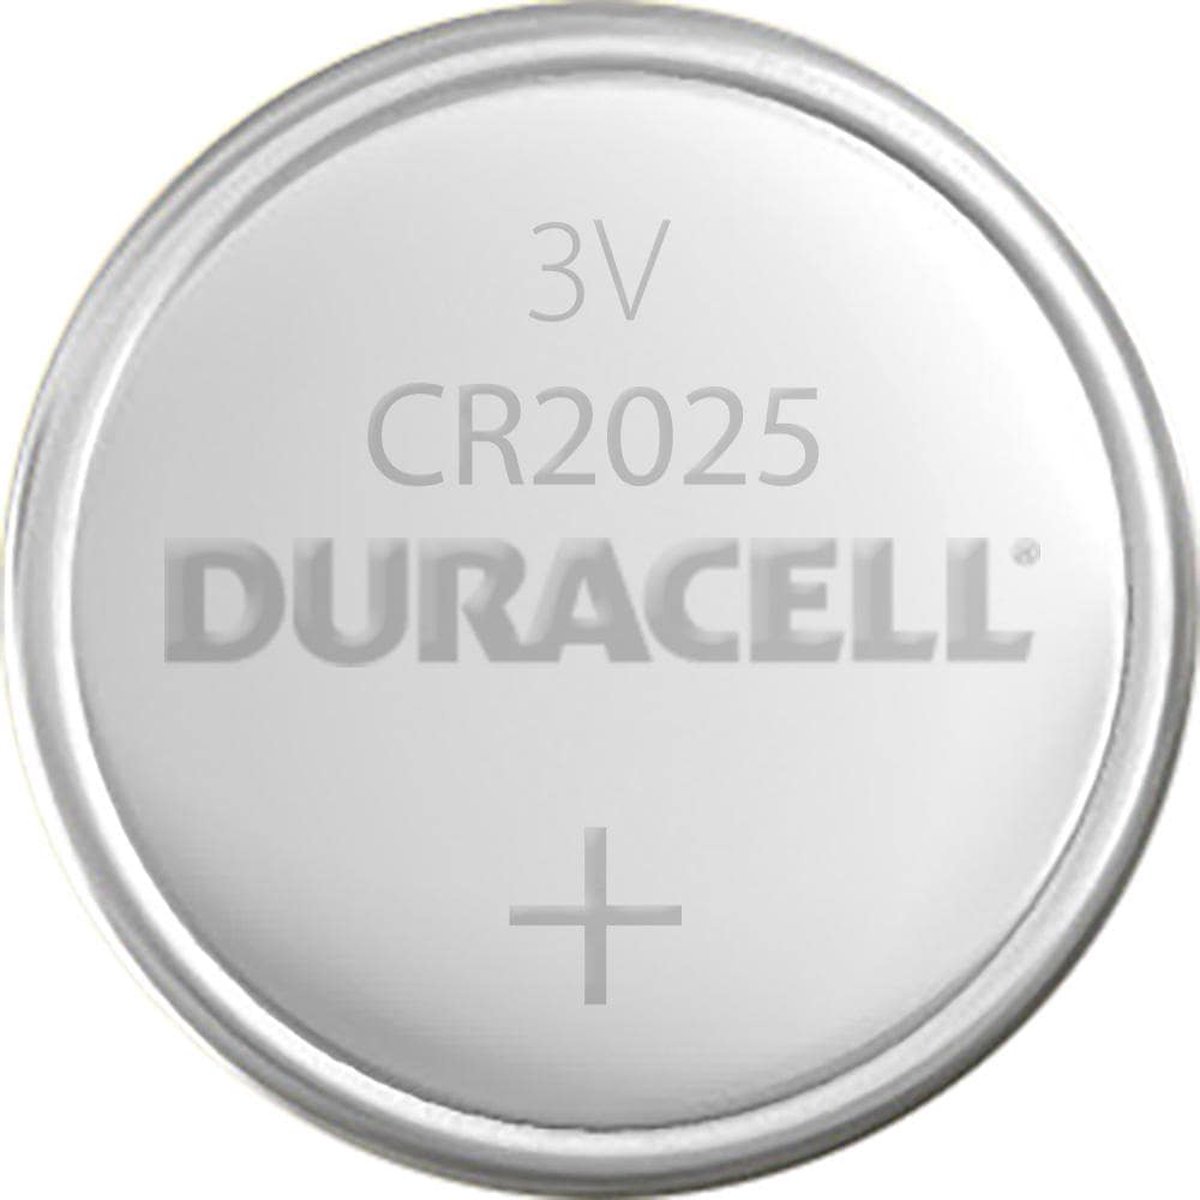 Pile bouton au lithium de 3 V 2025 de Duracell - emballage de 1